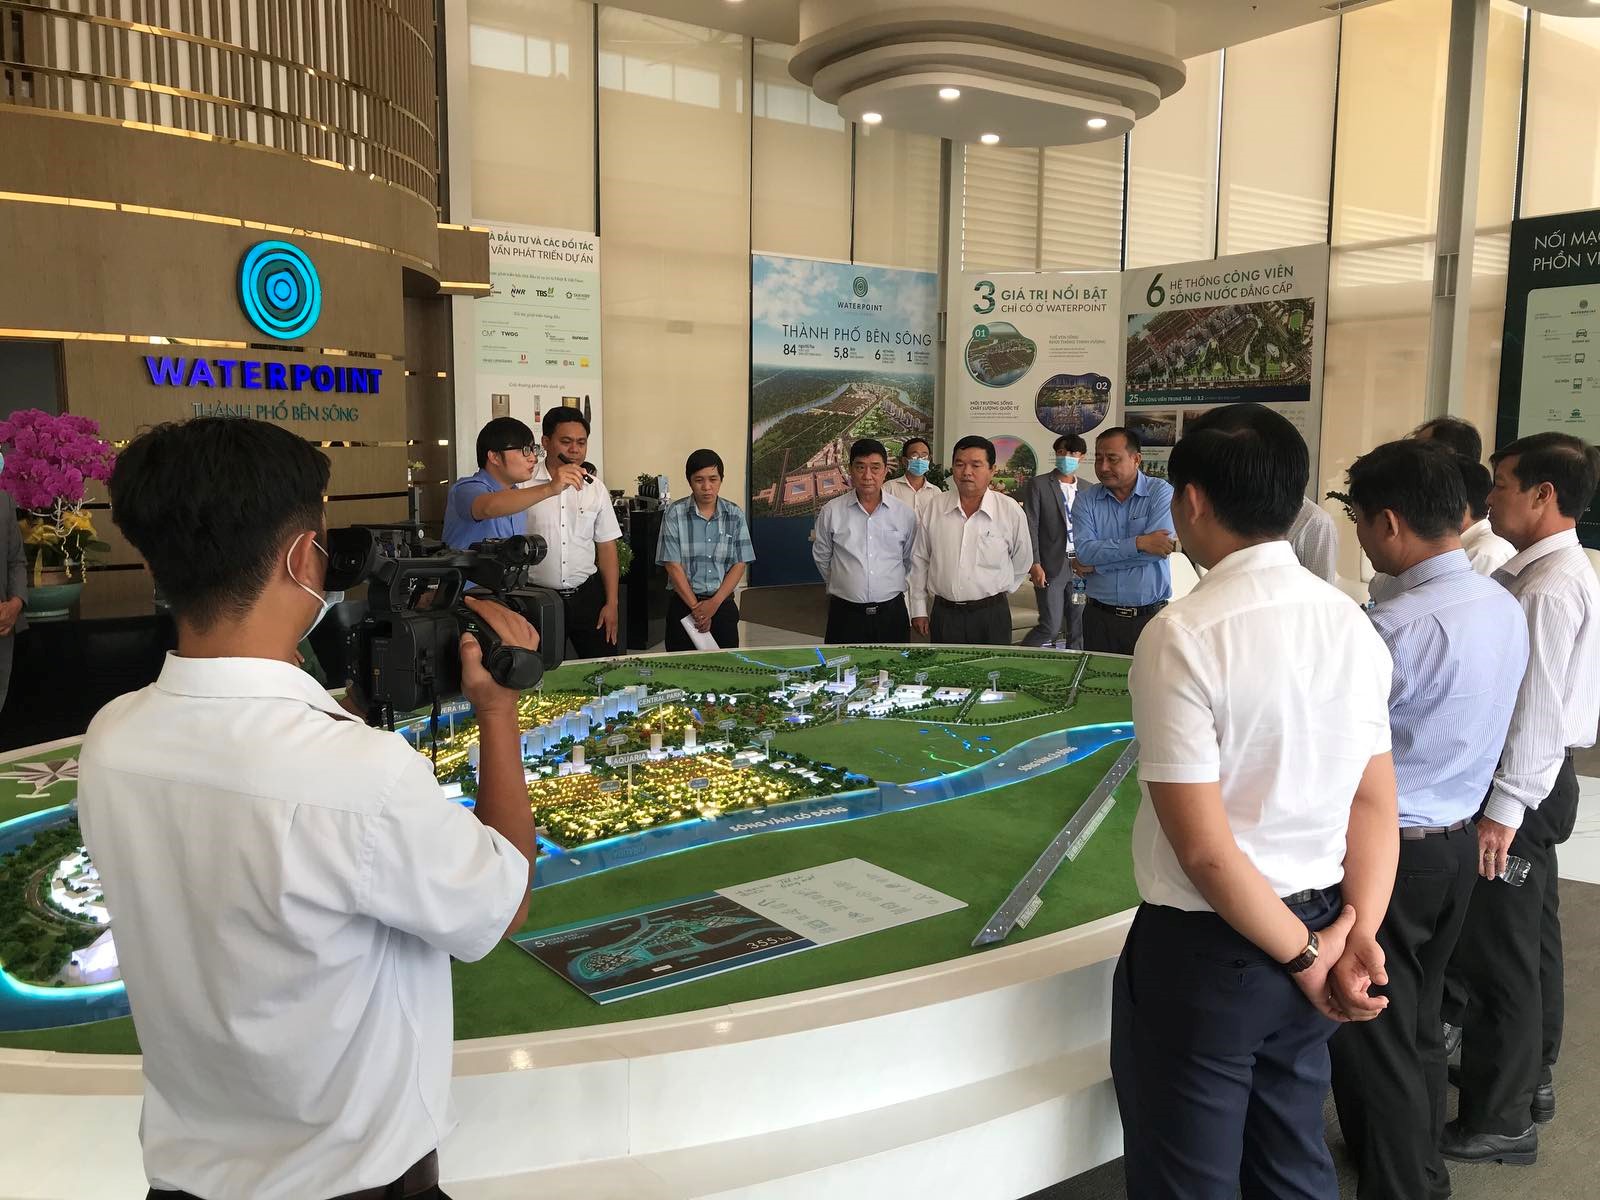 Trong năm 2020, các hoạt động kinh doanh, triển khai dự án của Nam Long liên tục nhận được sự chú ý của thị trường và ghi nhận những kết quả tích cực.